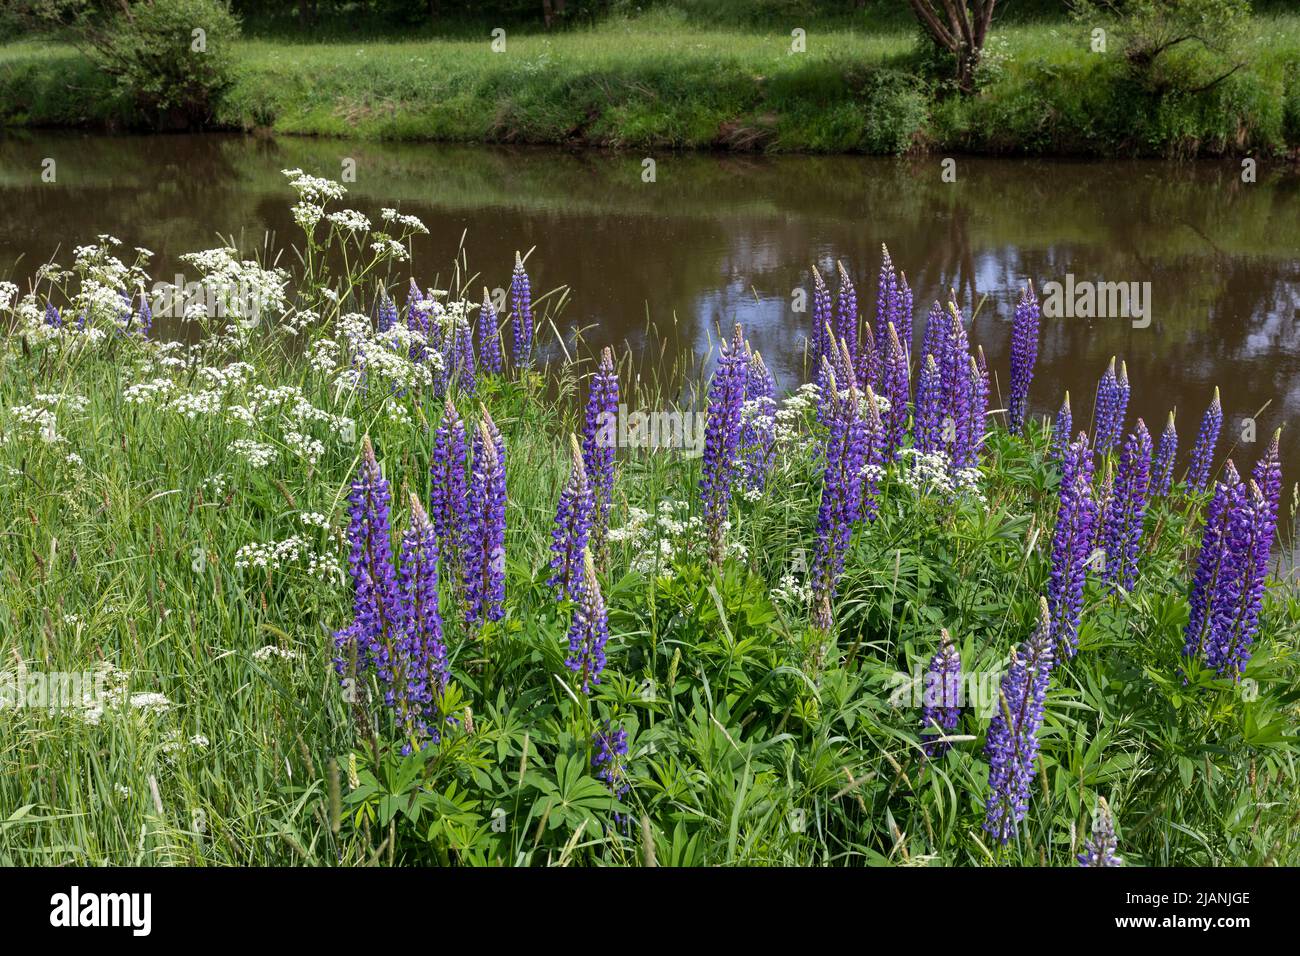 Florece lupino púrpura a lo largo del río Haase cerca de Haselune, Alemania Foto de stock